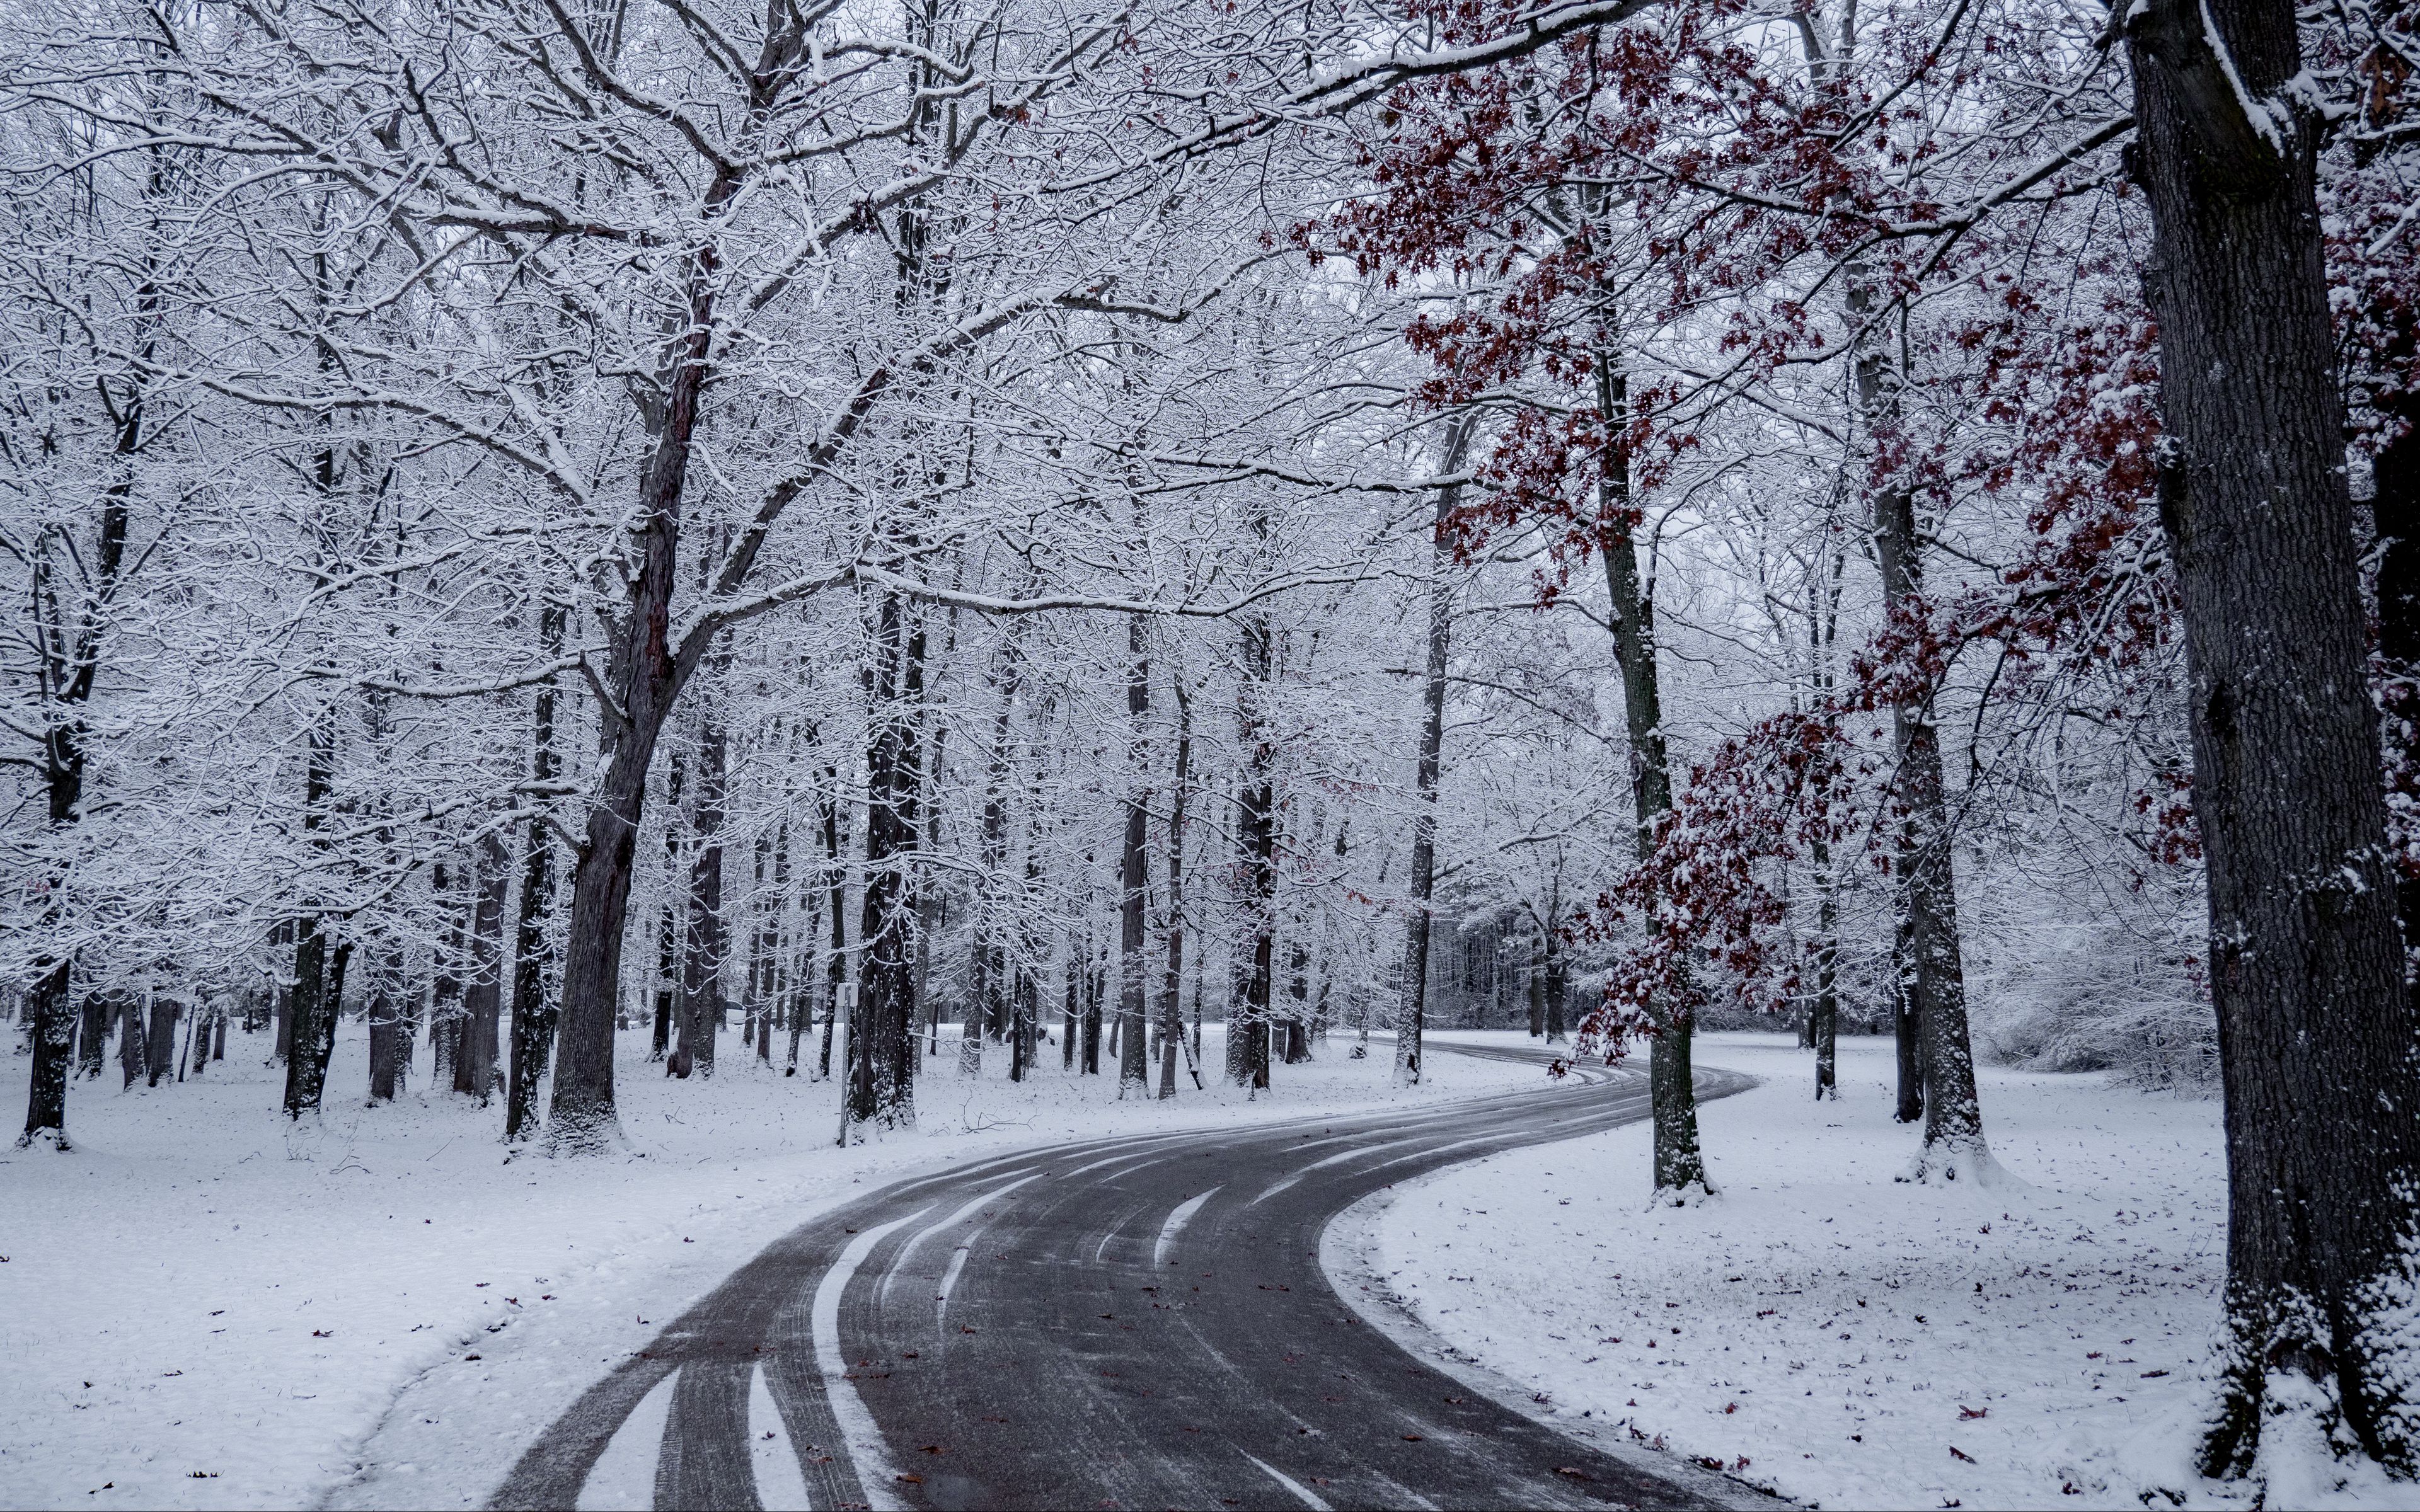 Тема зимней дороги. Зимний лес. Зимняя дорога в лесу. Деревья в снегу. Снег фото.